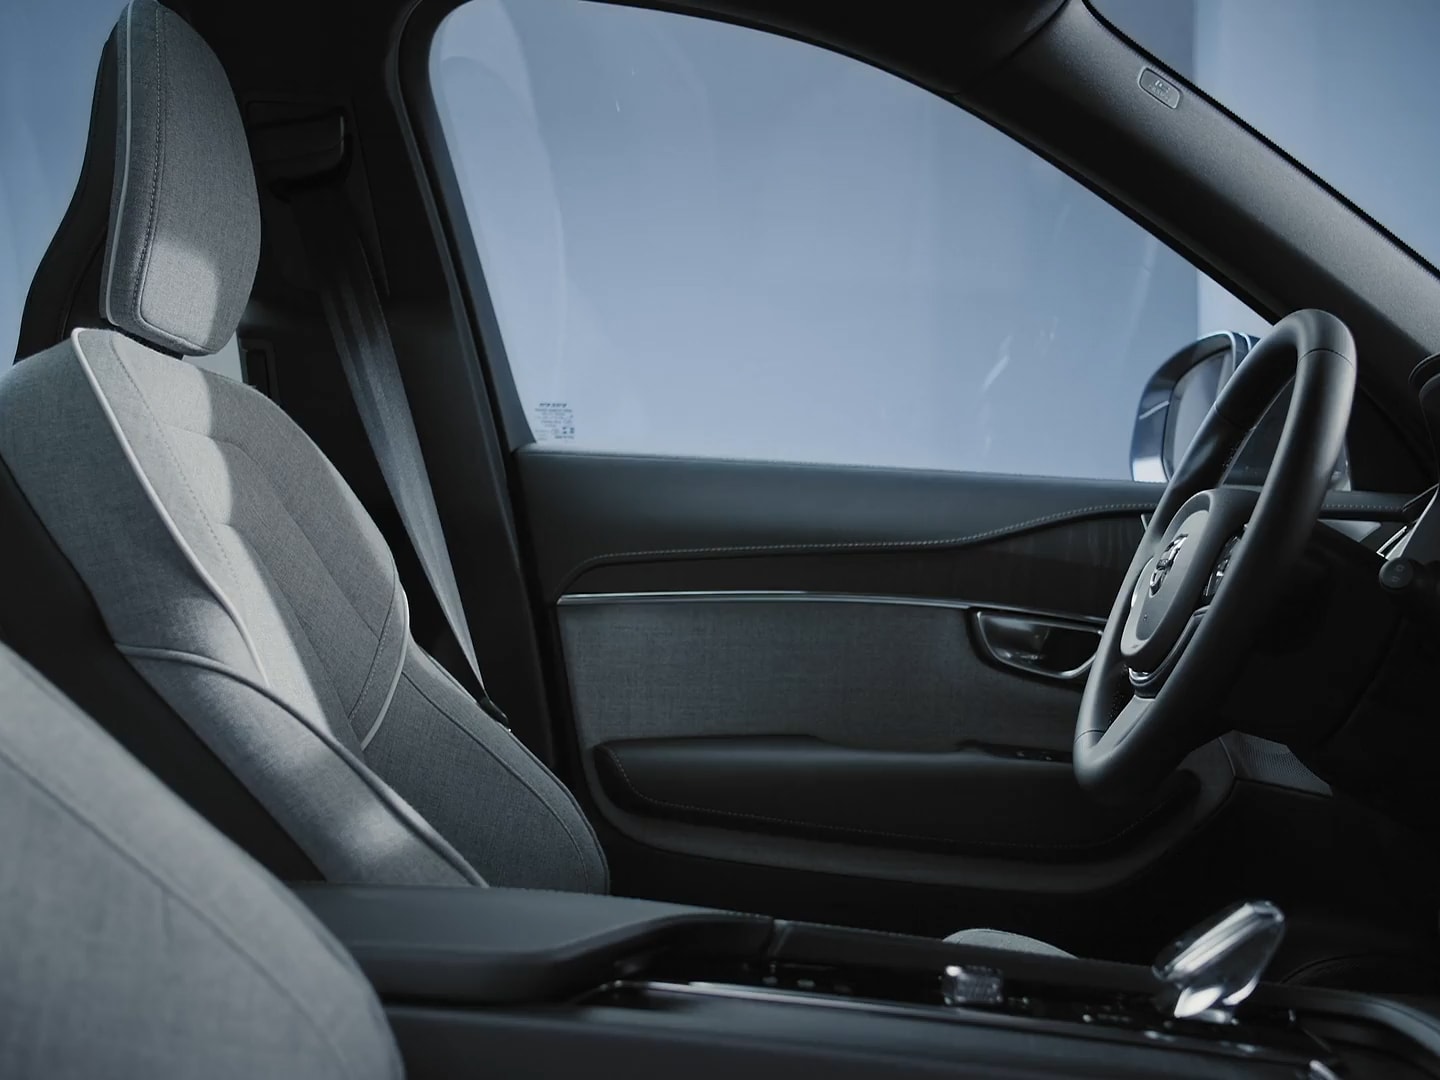 Beifahreransicht des Volvo XC90 Plug-in Hybrid Fahrersitz und -tür mit Wollpolsterung und schwarzem Lenkrad.